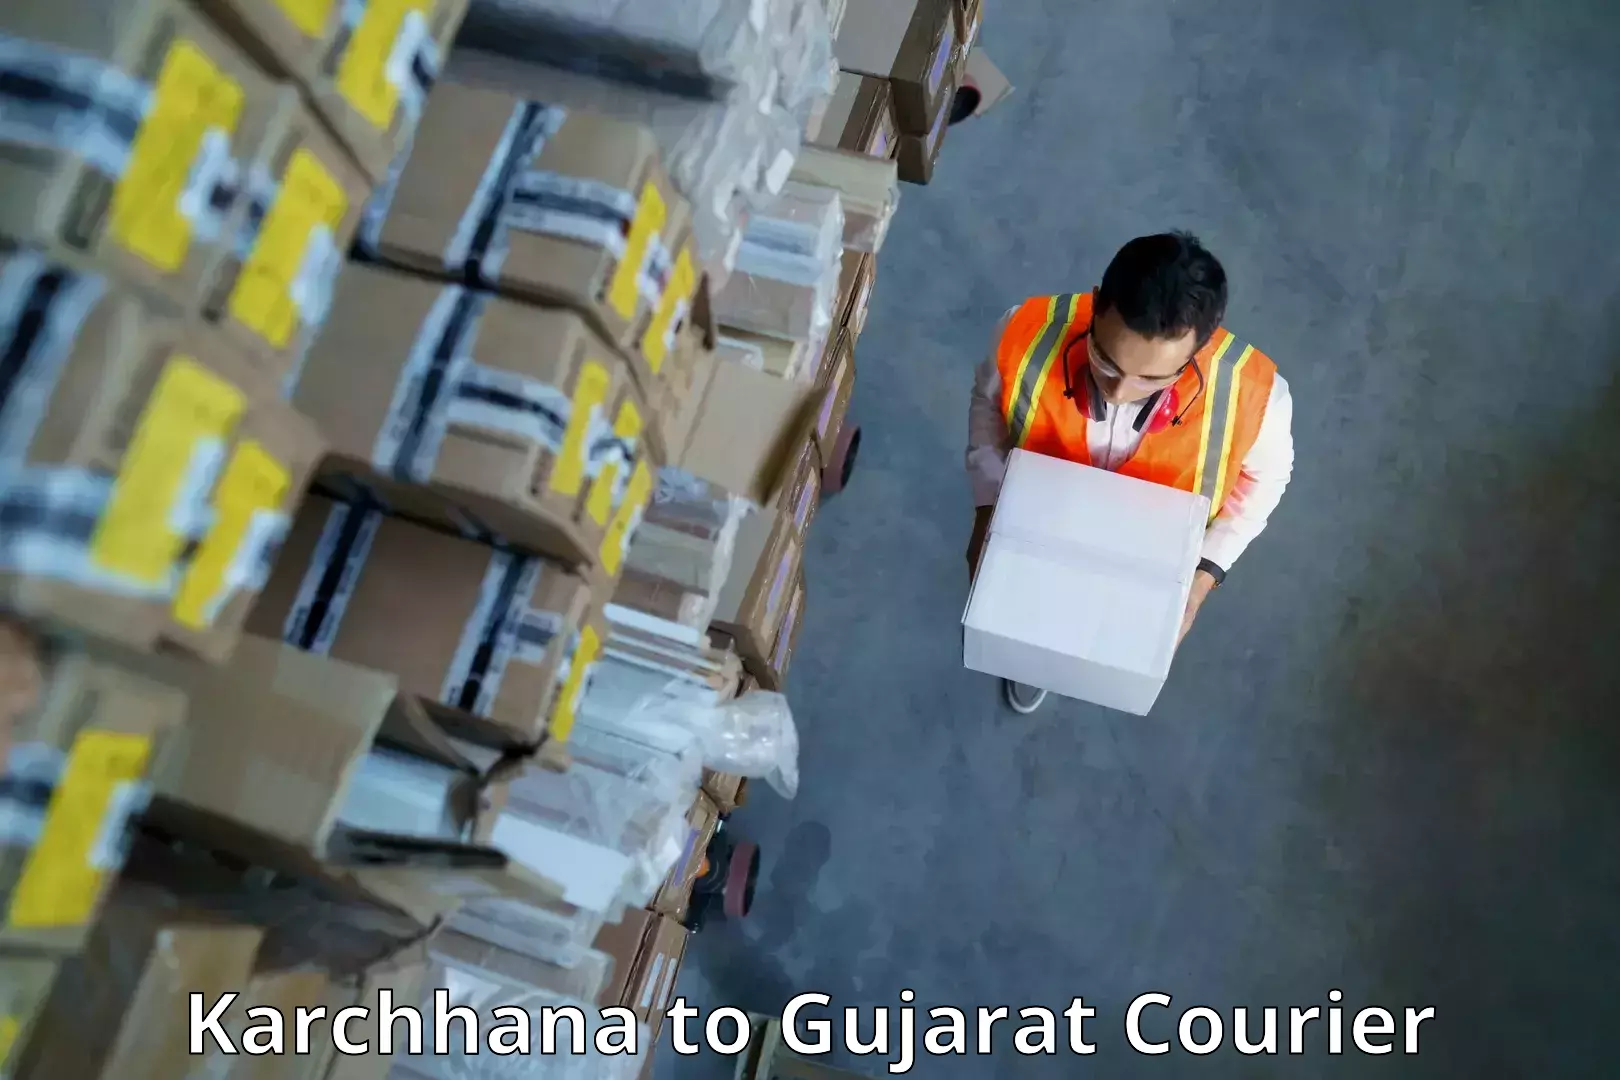 Express logistics service Karchhana to IIIT Surat